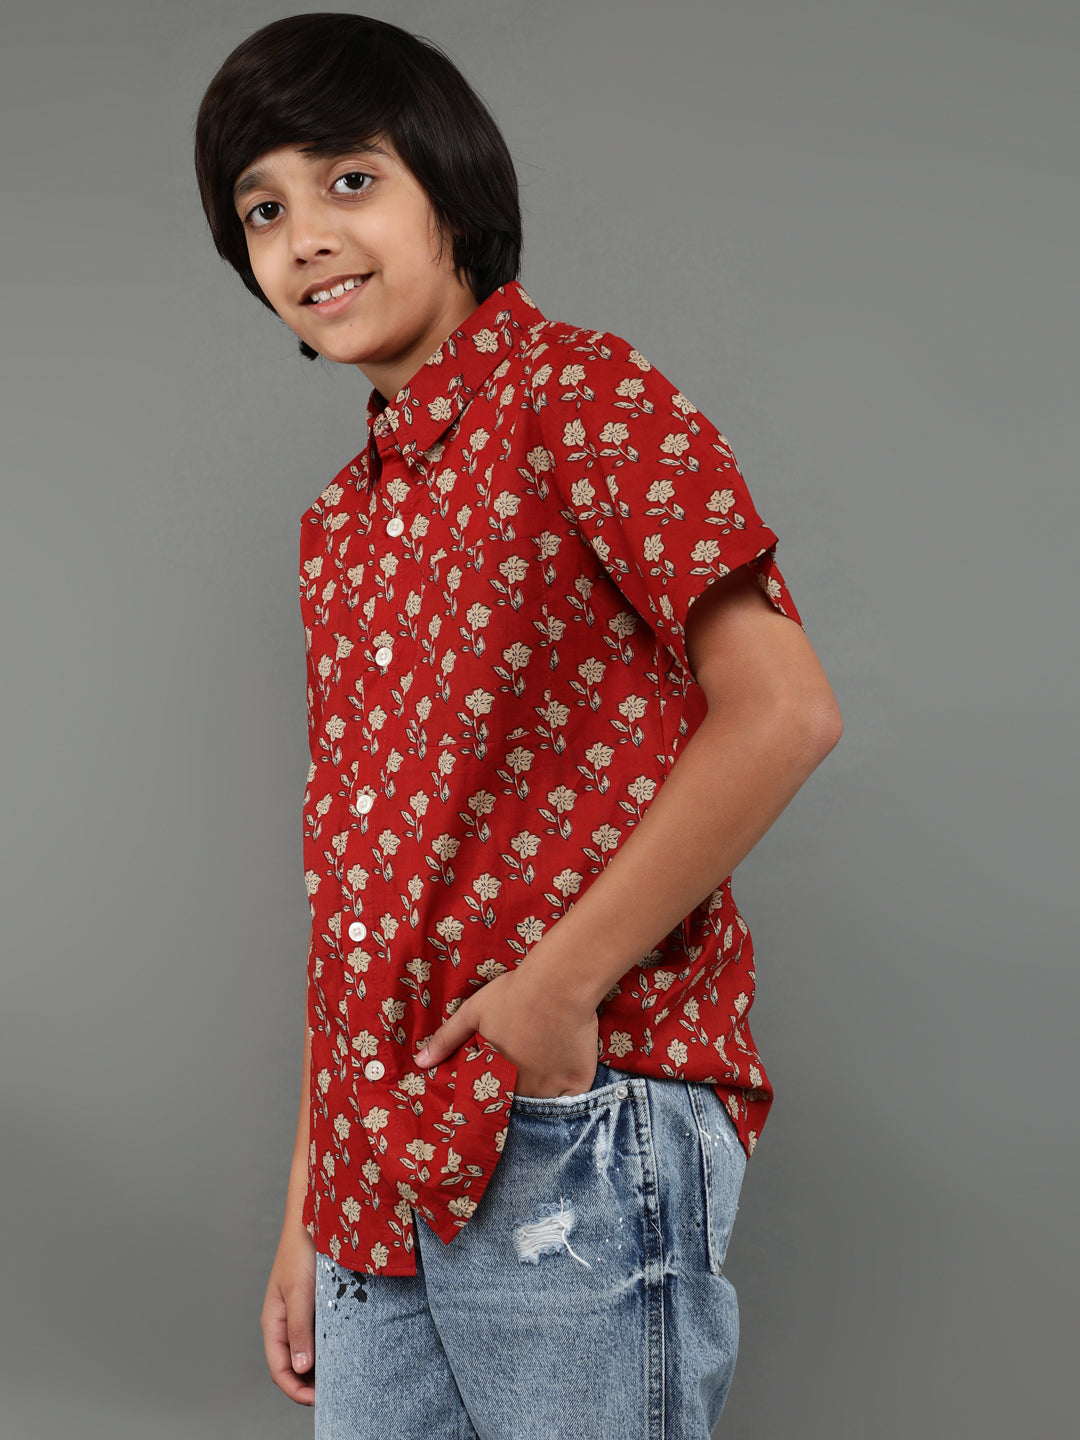 Boy's Brown Floral Print Shirt - Aks Boys